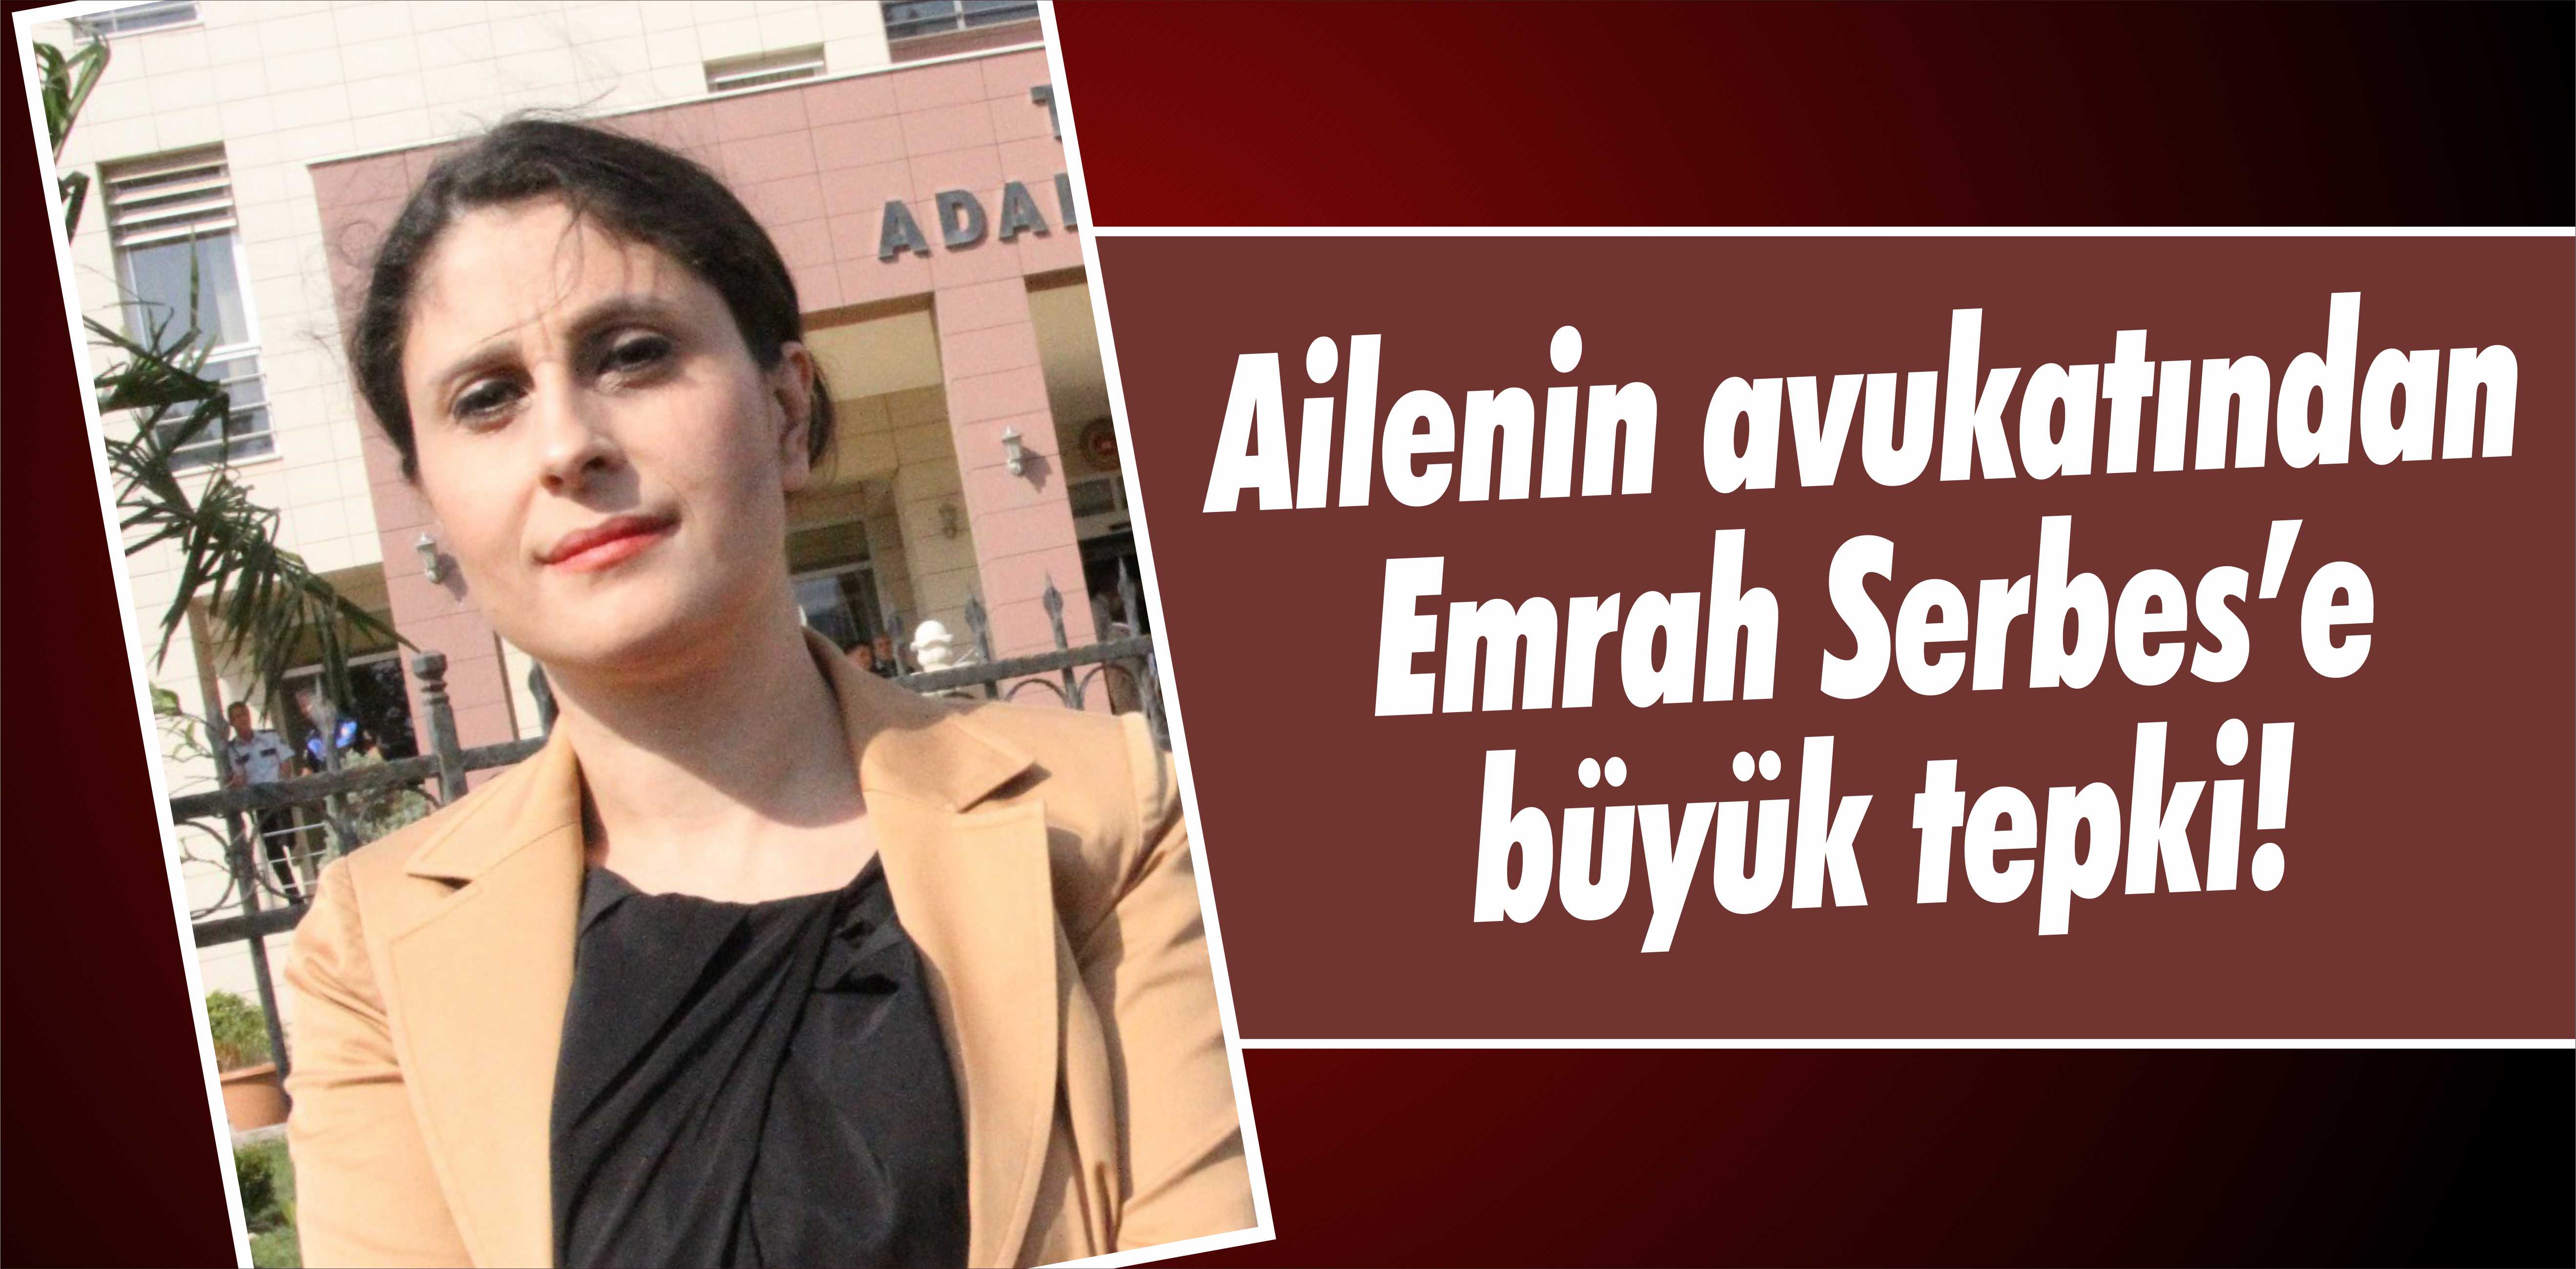 Ailenin avukatından Emrah Serbes’e büyük tepki!